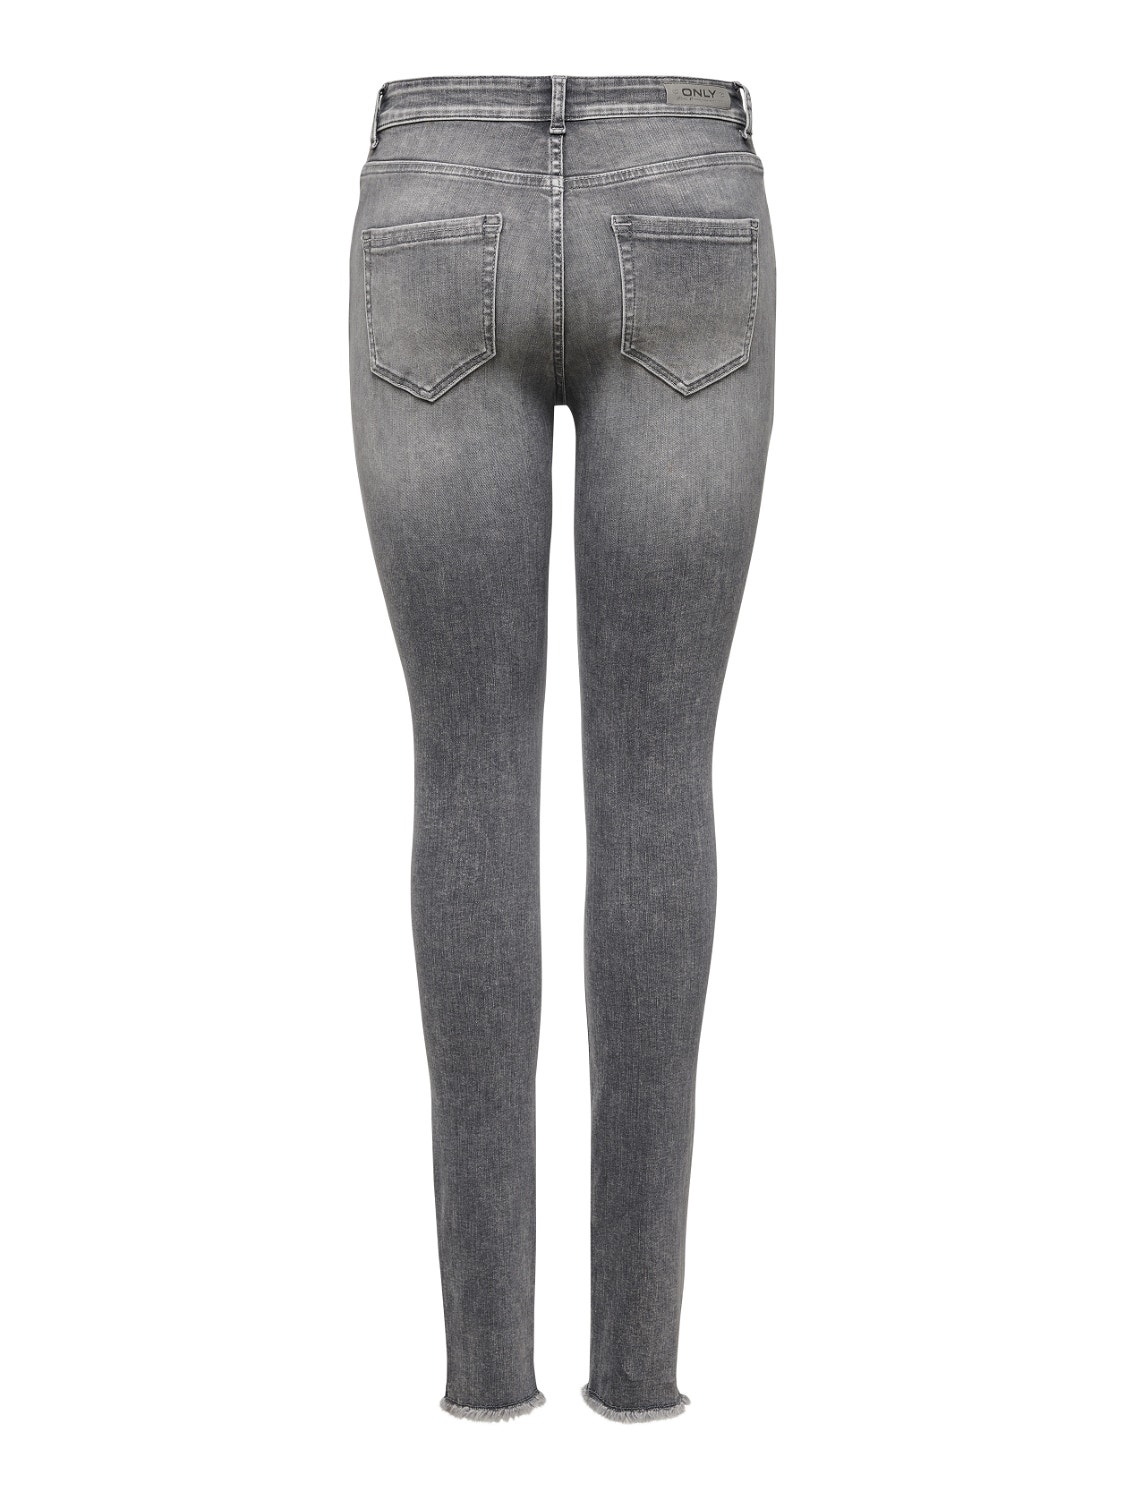 ONLY Jeans Skinny Fit Ourlet brut -Grey Denim - 15188520